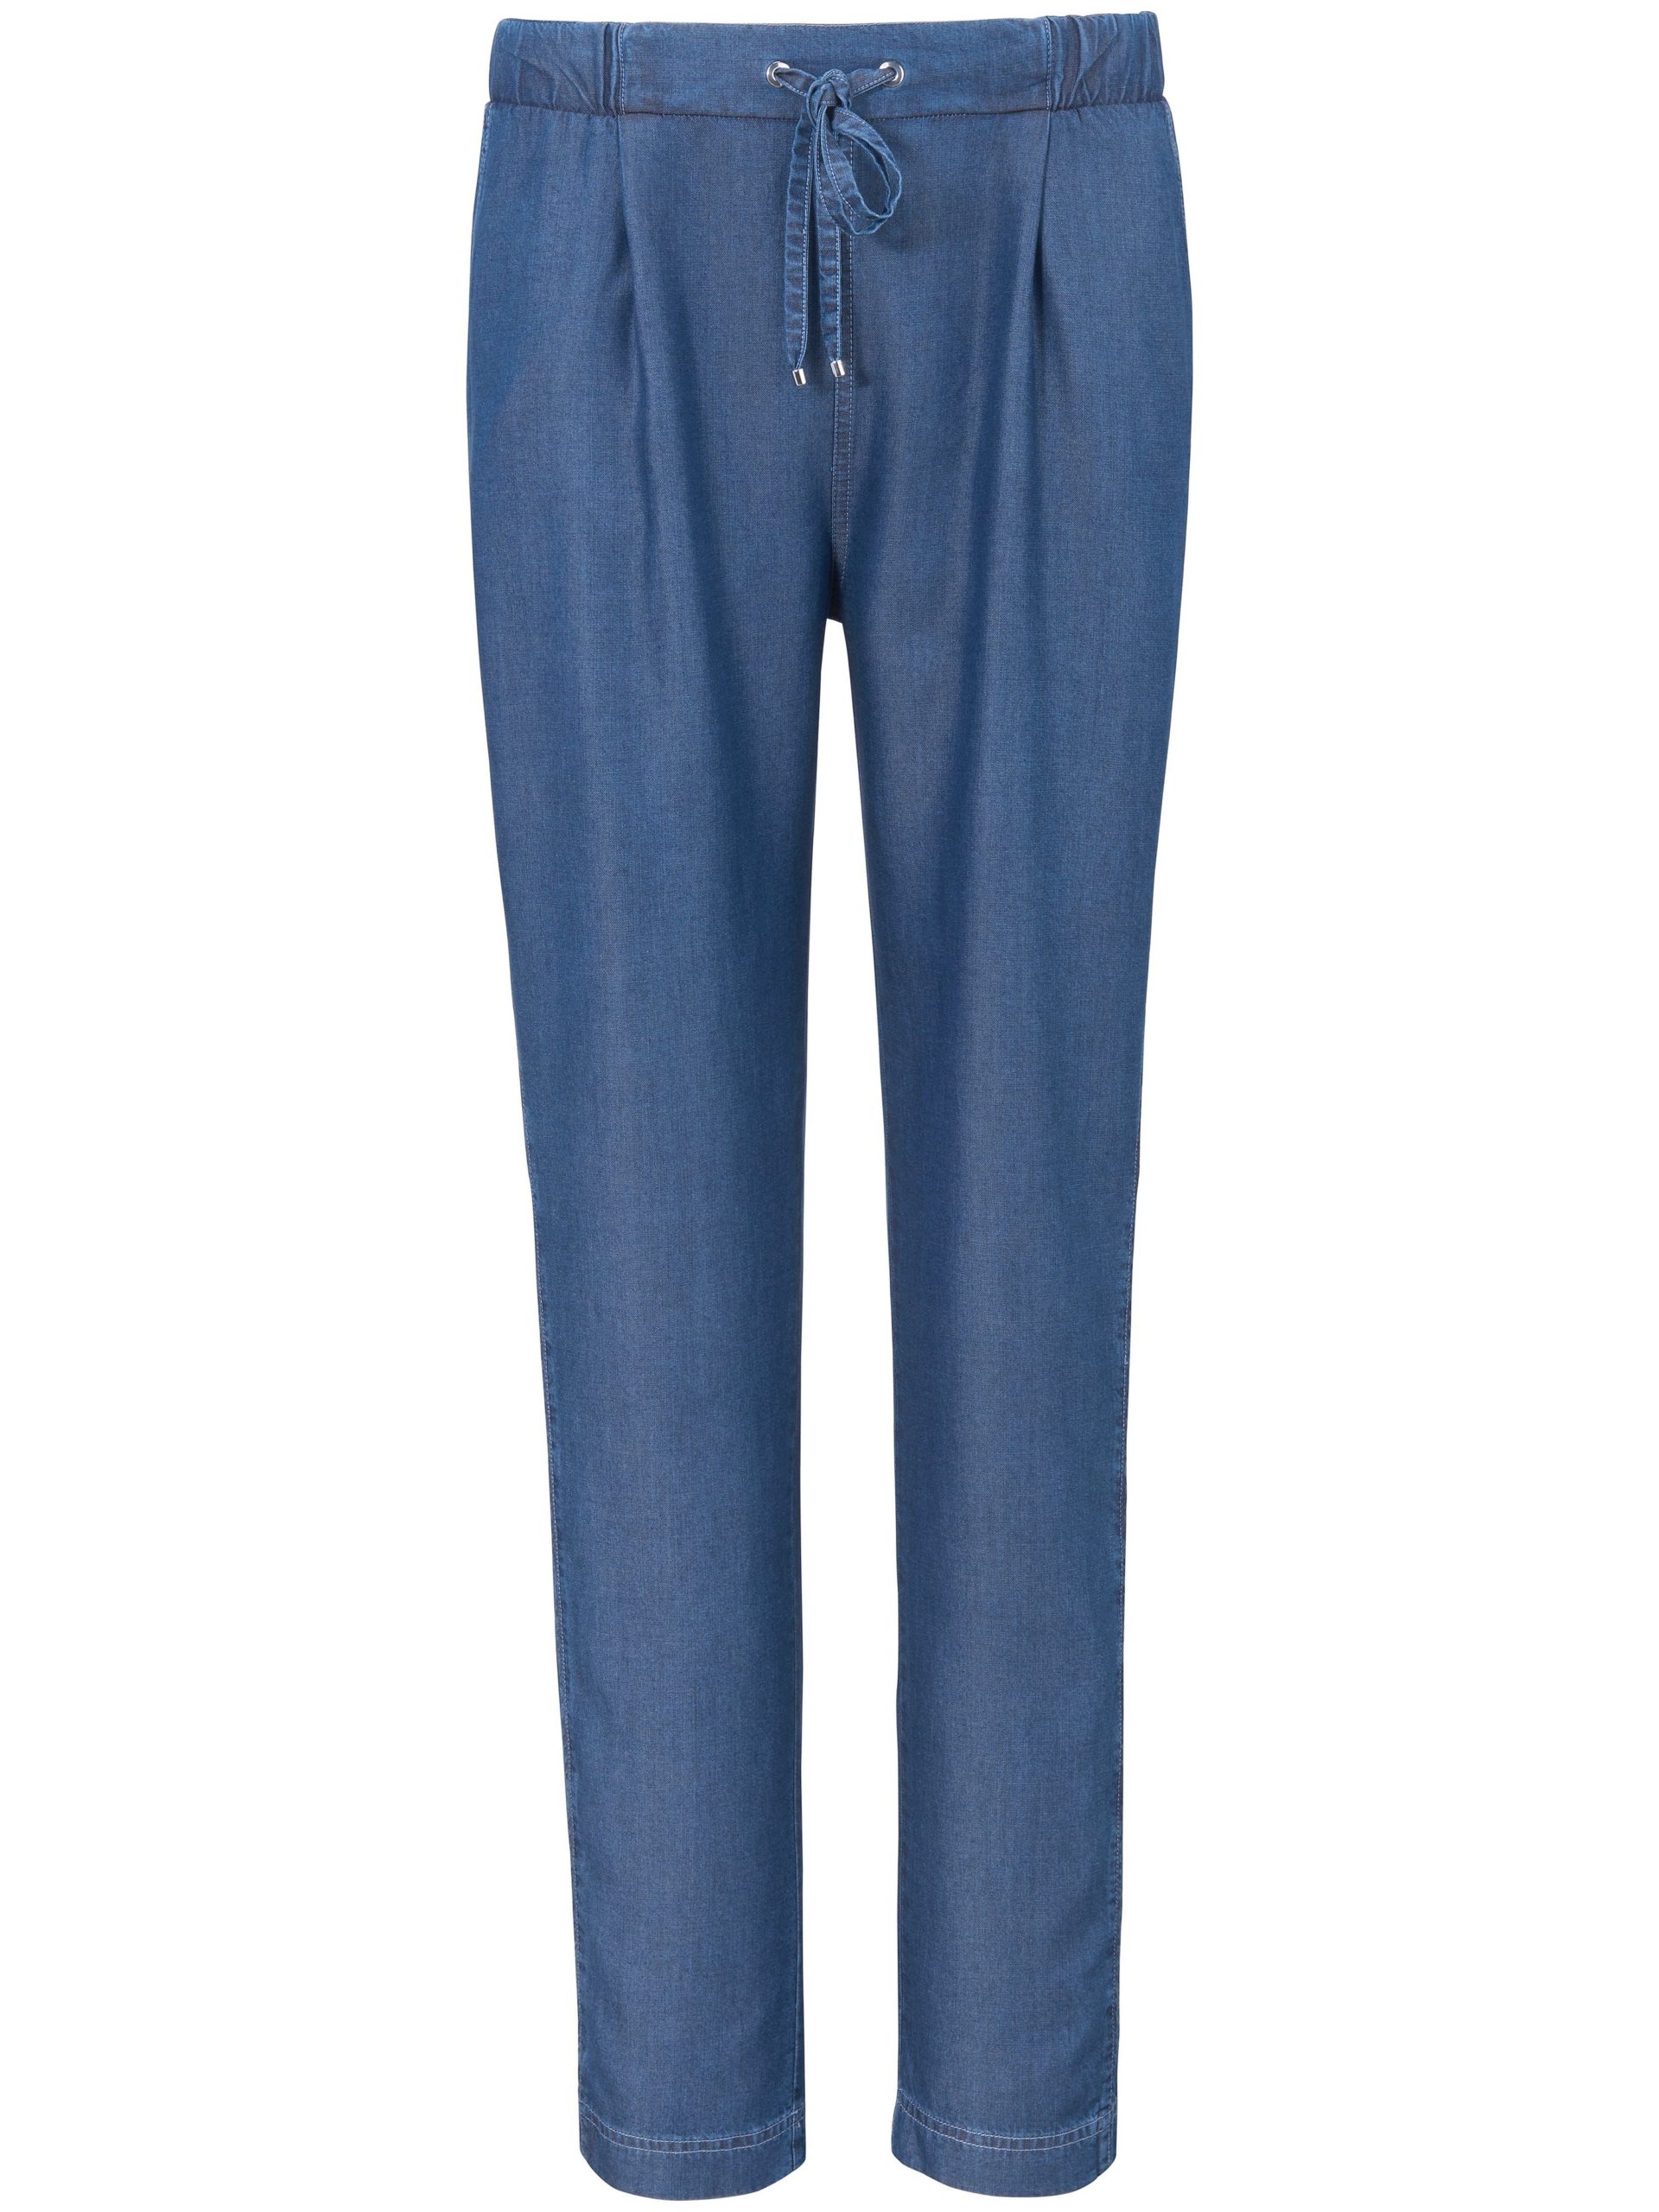 Enkellange broek in jogg-pant-stijl model Jil Van Basler blauw Kopen